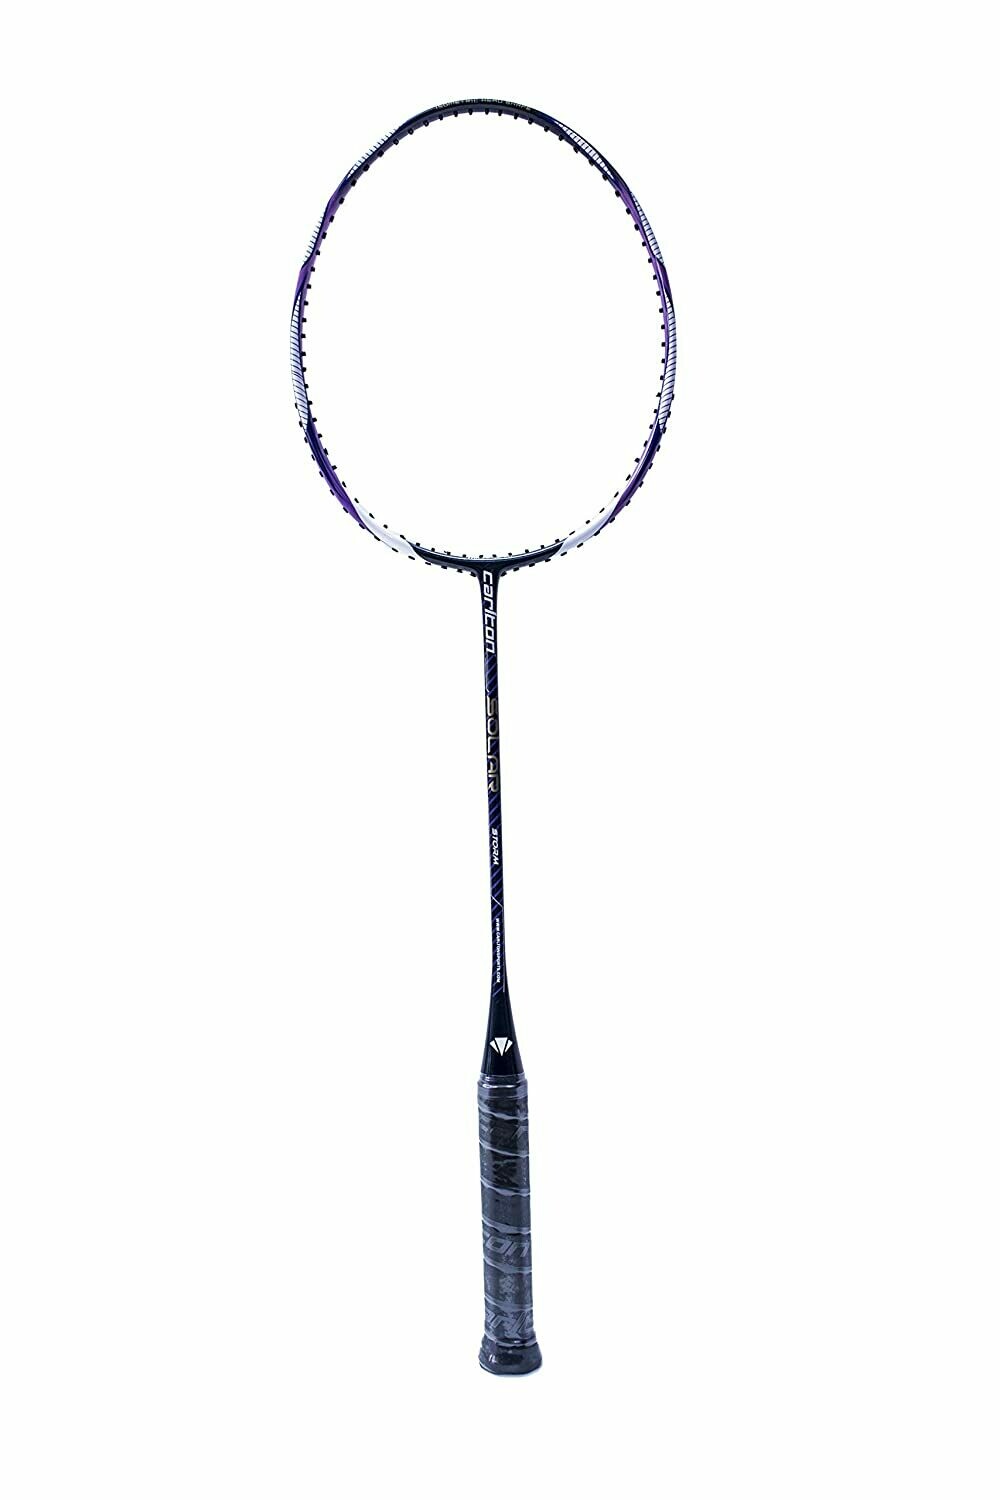 Carlton Solar Storm Badminton Racquet